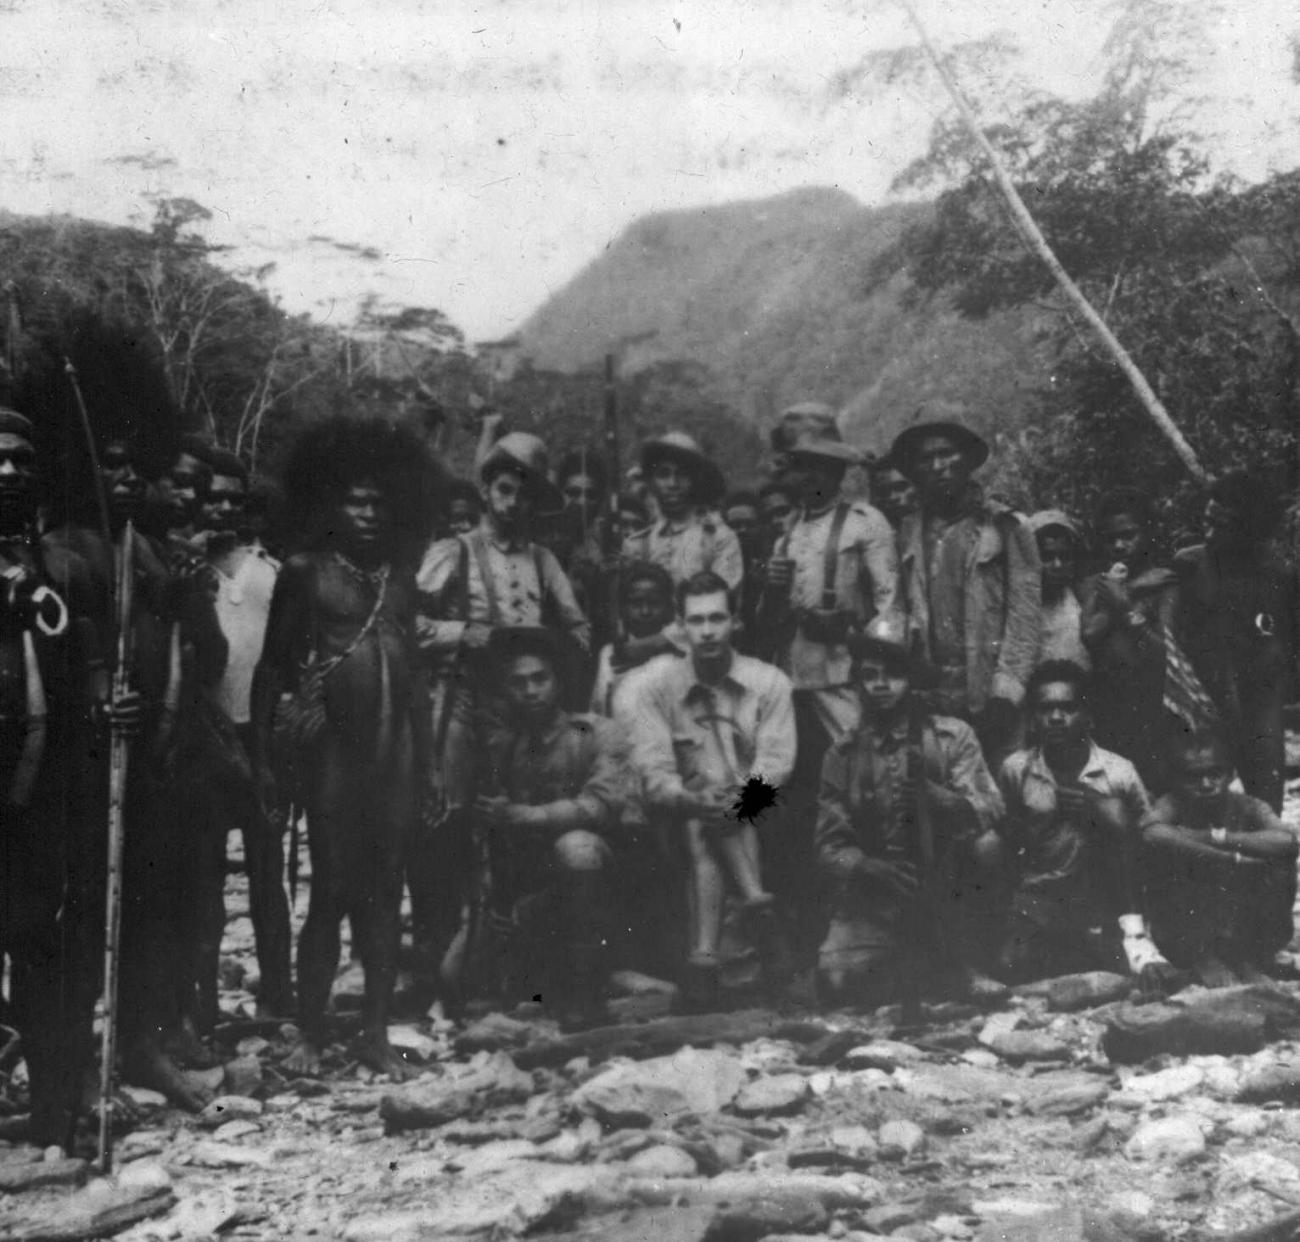 BD/66/453 - 
Groepsfoto van bestuursambtenaar Vic de Bruyn met de Papoea&#039;s onder zijn commando tijdens WOII
